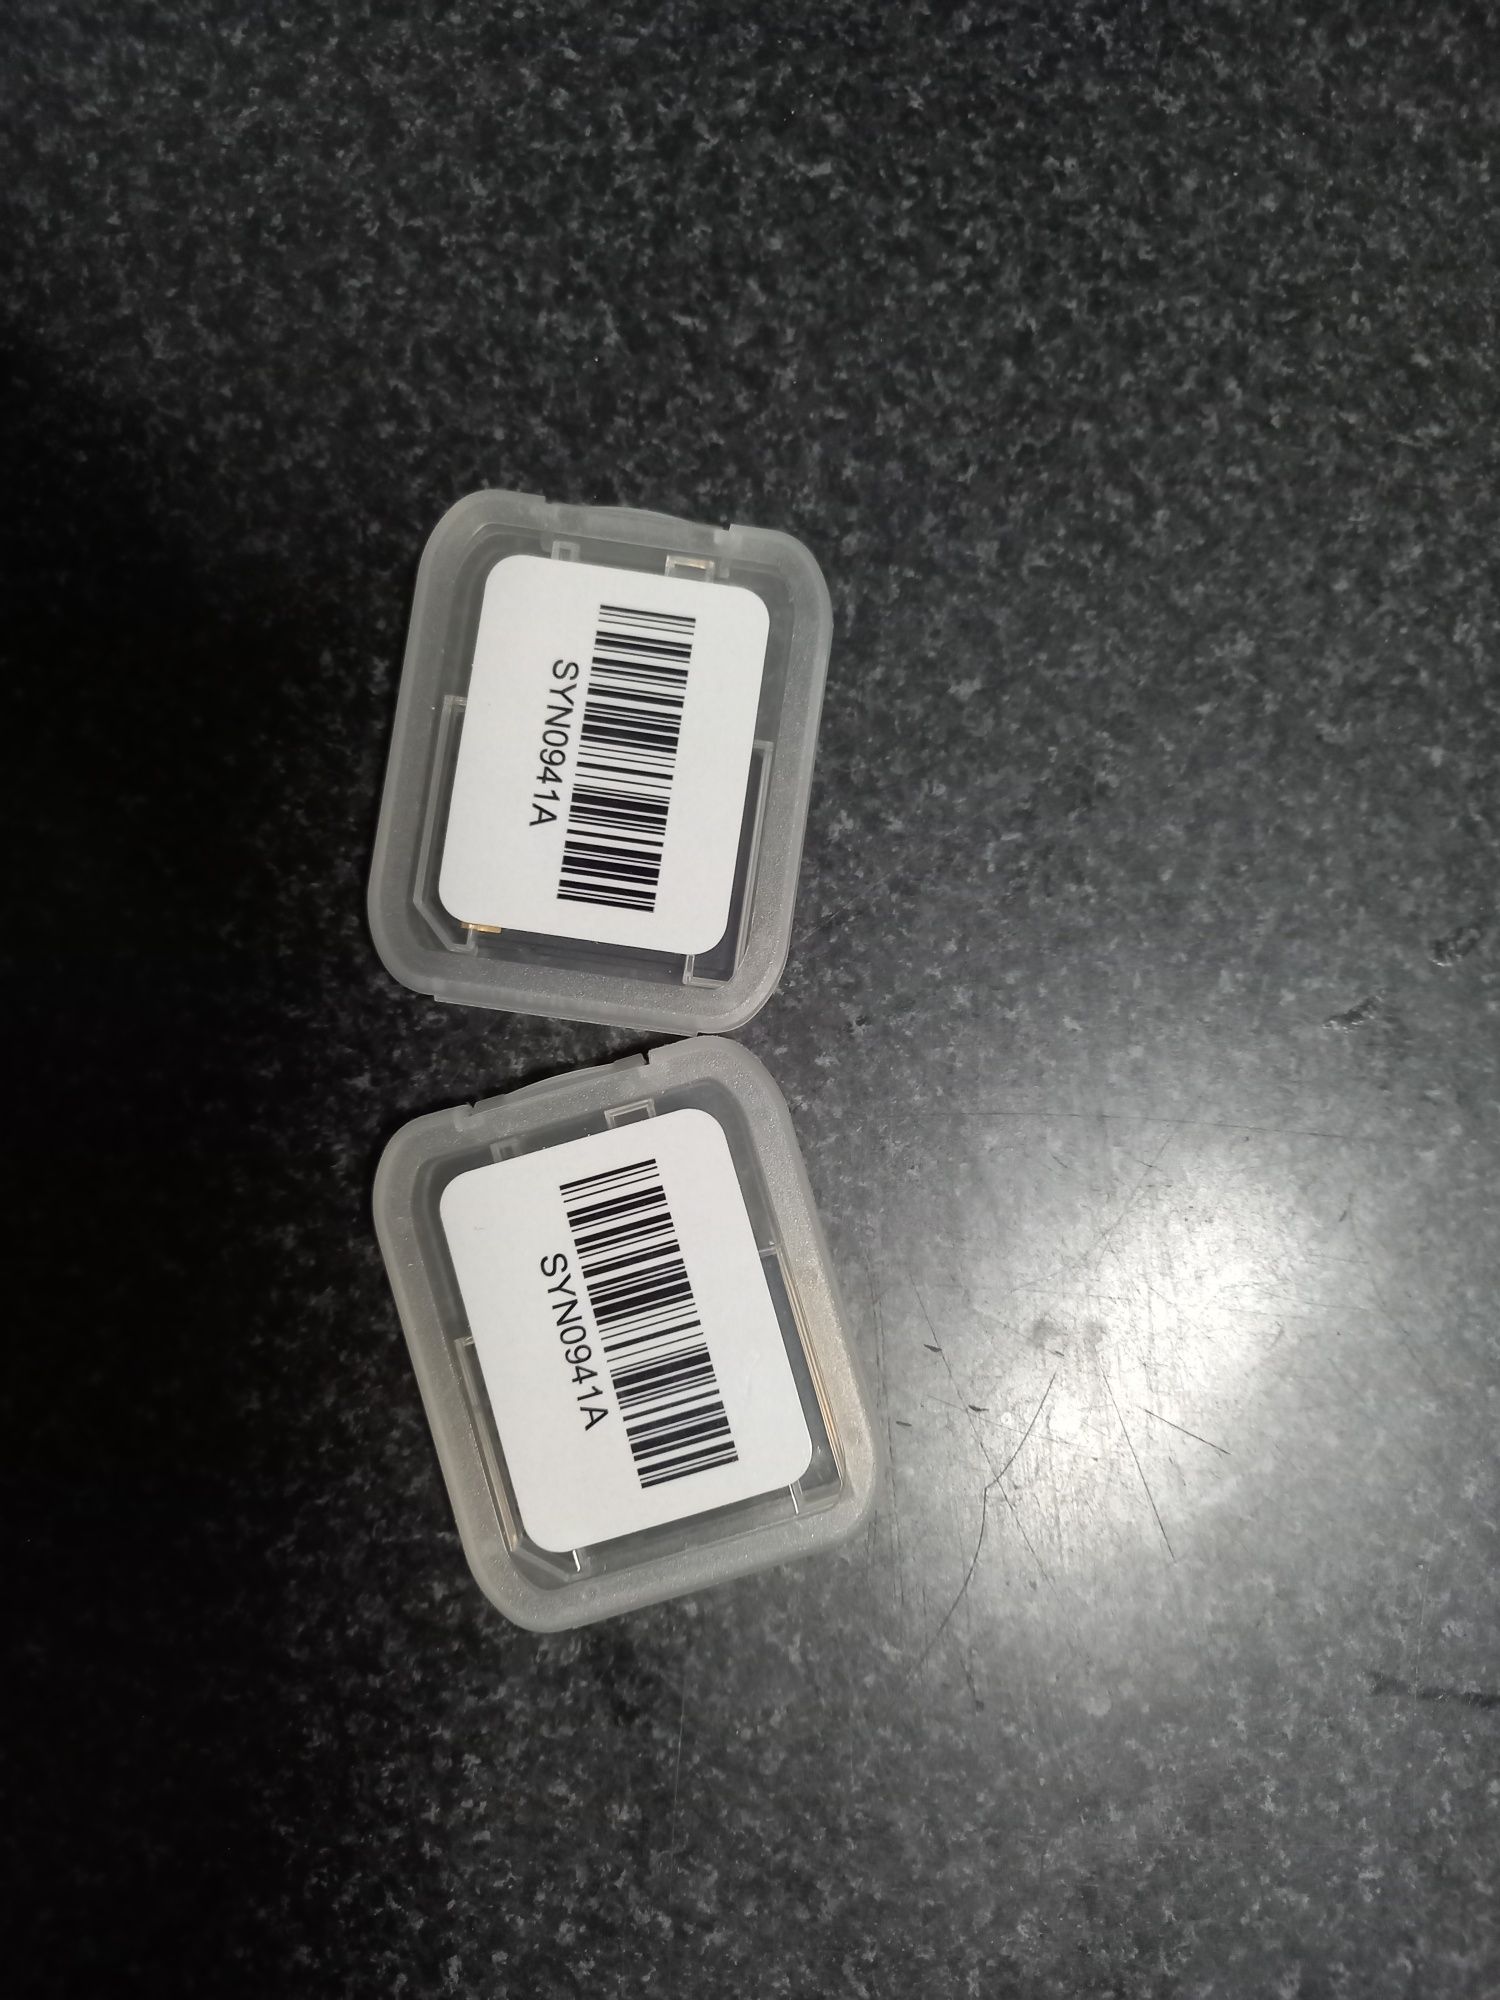 2 adaptadores SD SanDisk novos e 1 MicroSD